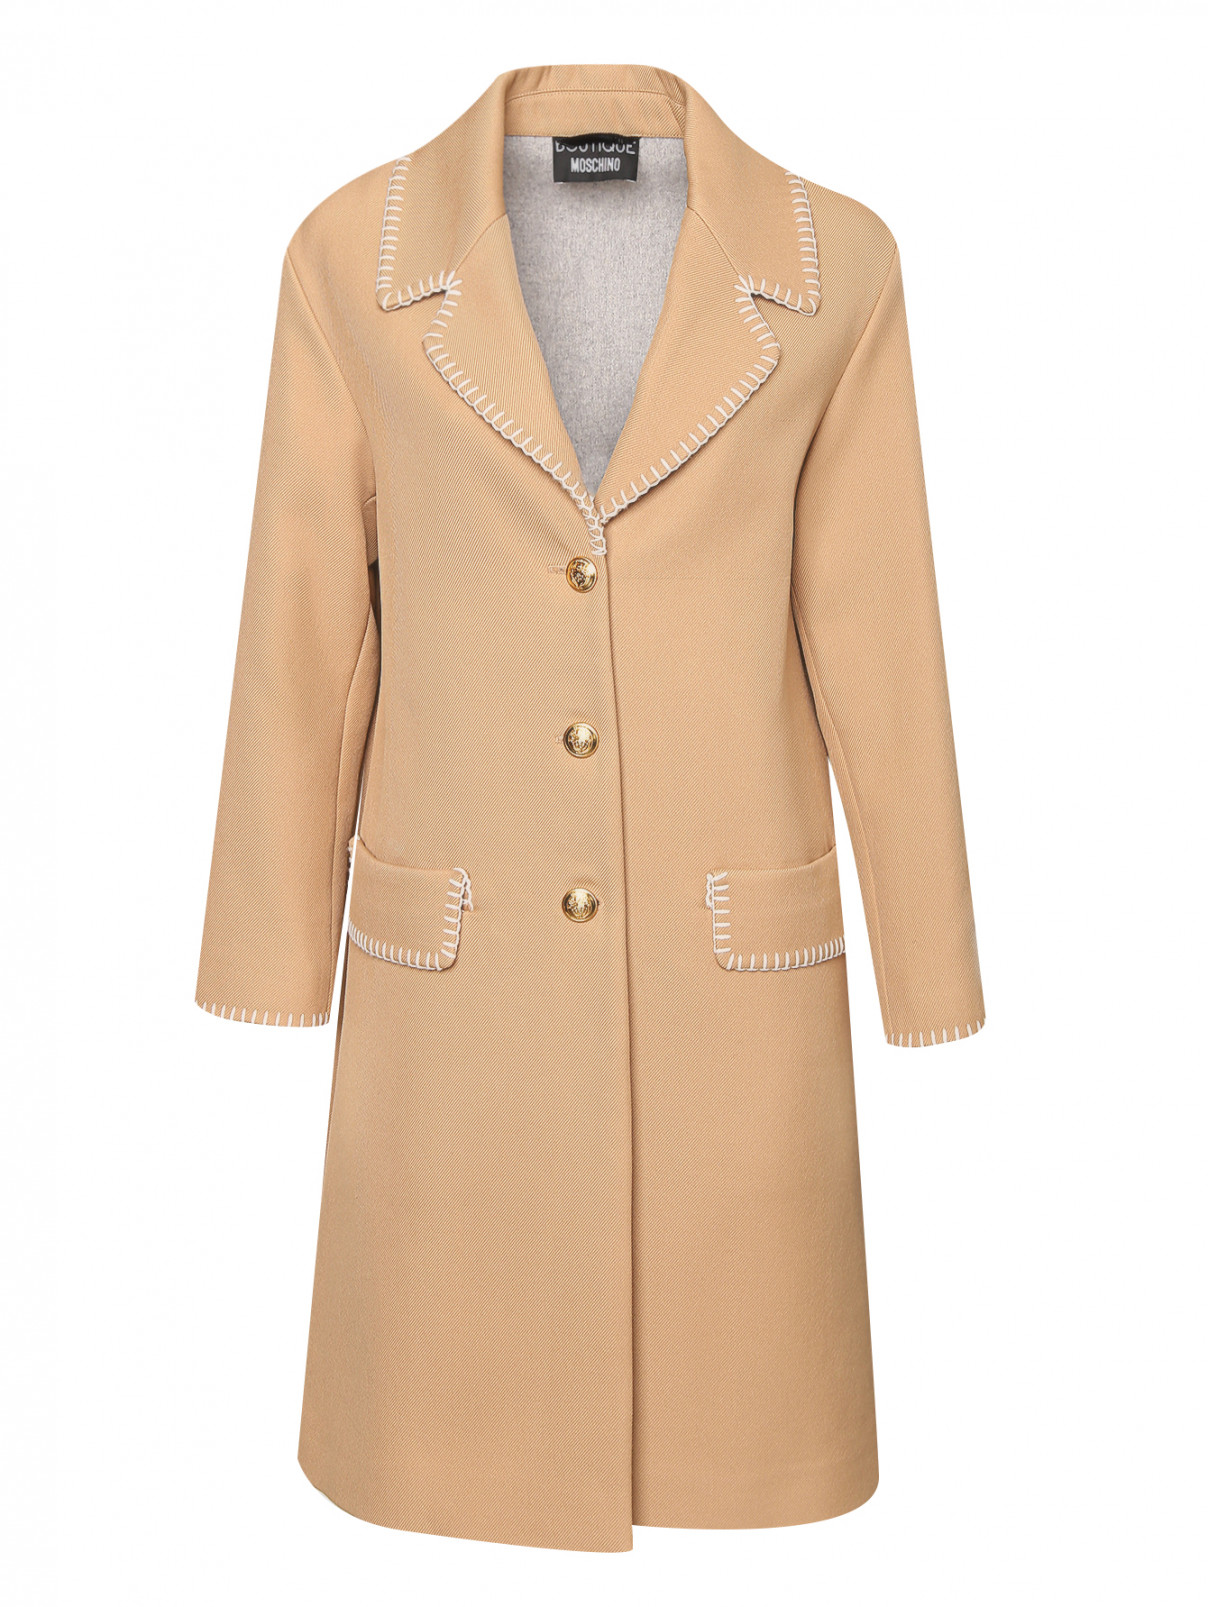 Пальто из смешанной шерсти с контрастной вышивкой Moschino Boutique  –  Общий вид  – Цвет:  Бежевый